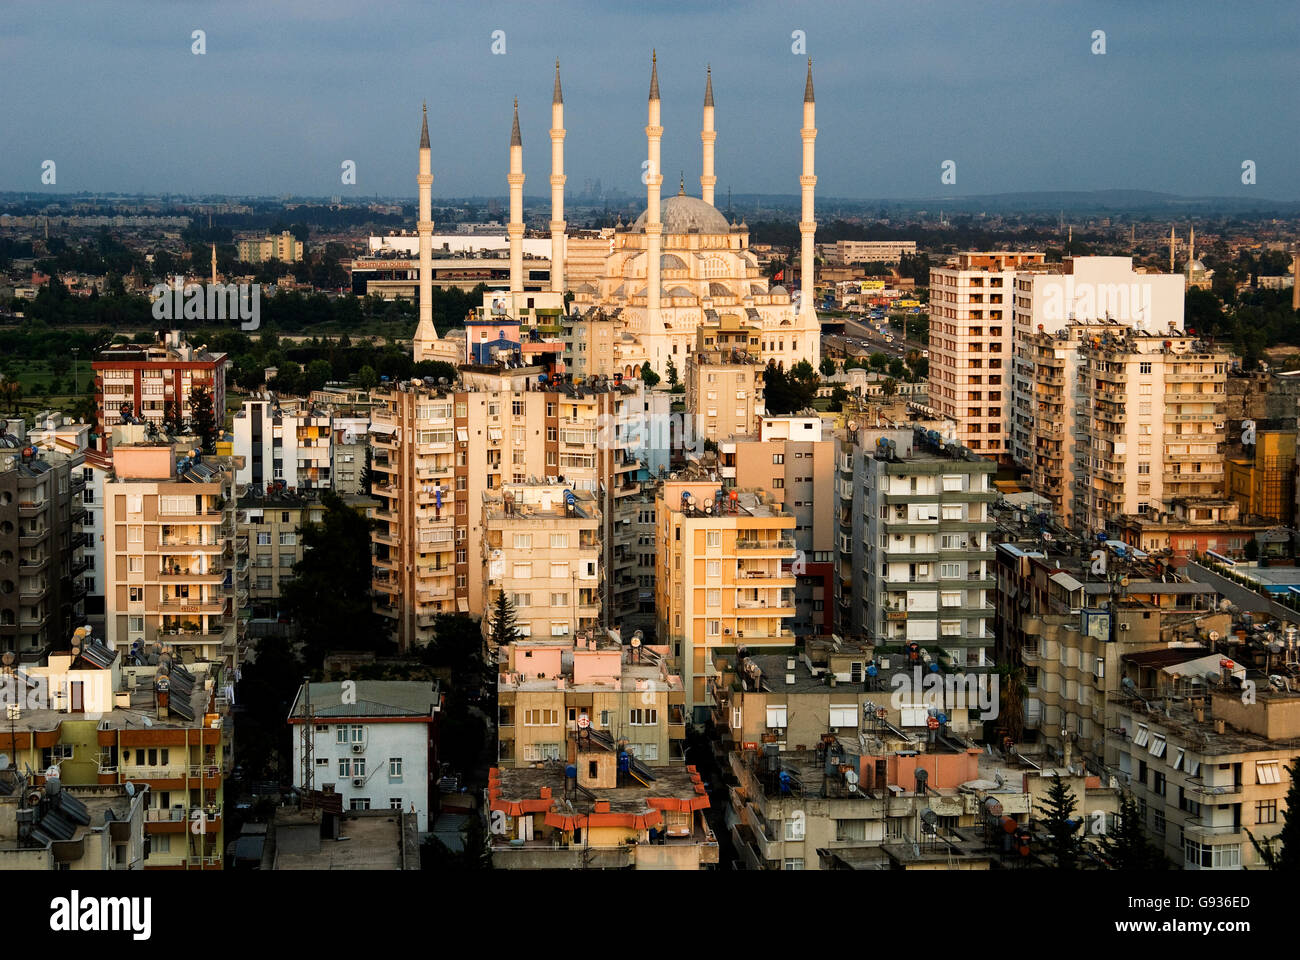 L'urbanisation rapide et la mosquée Sabancı - Ville d'Adana Turquie Banque D'Images